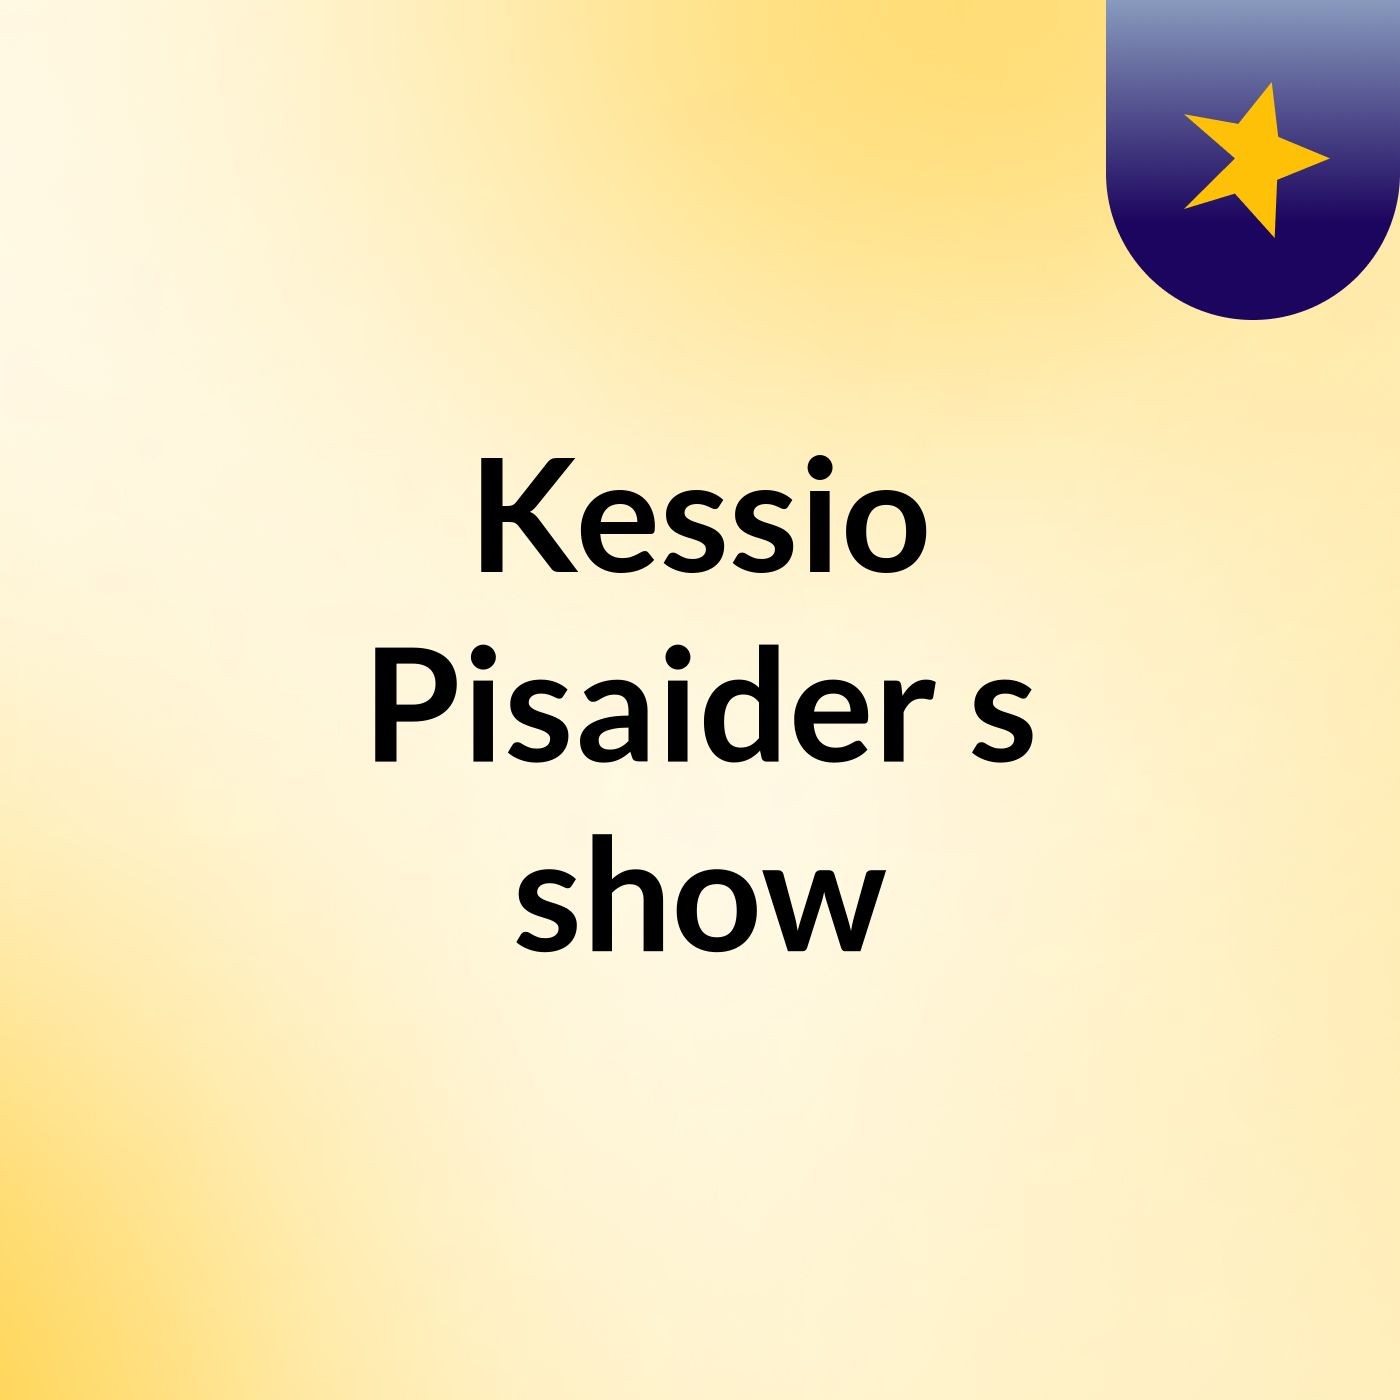 Kessio Pisaider's show